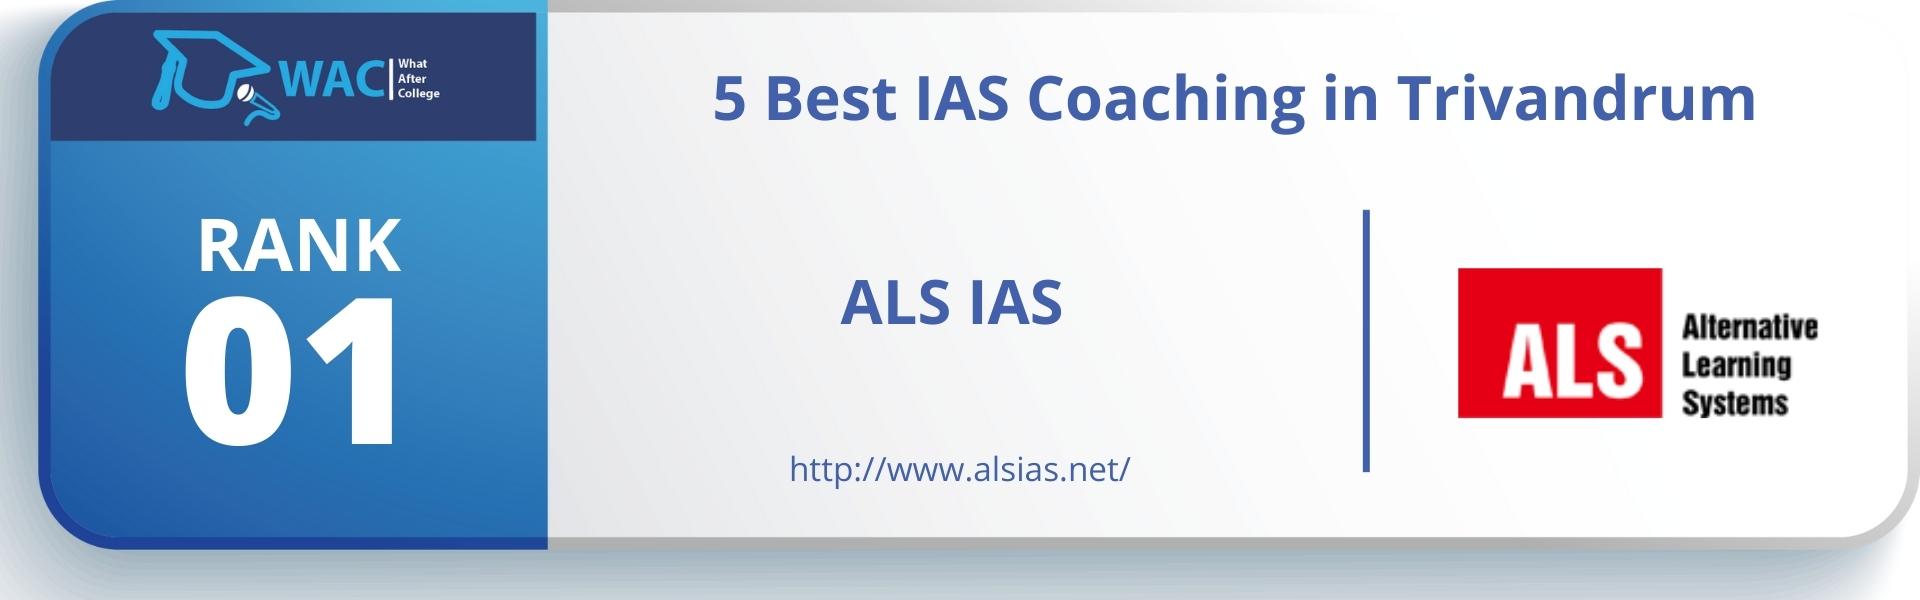 Best IAS Coaching in Trivandrum